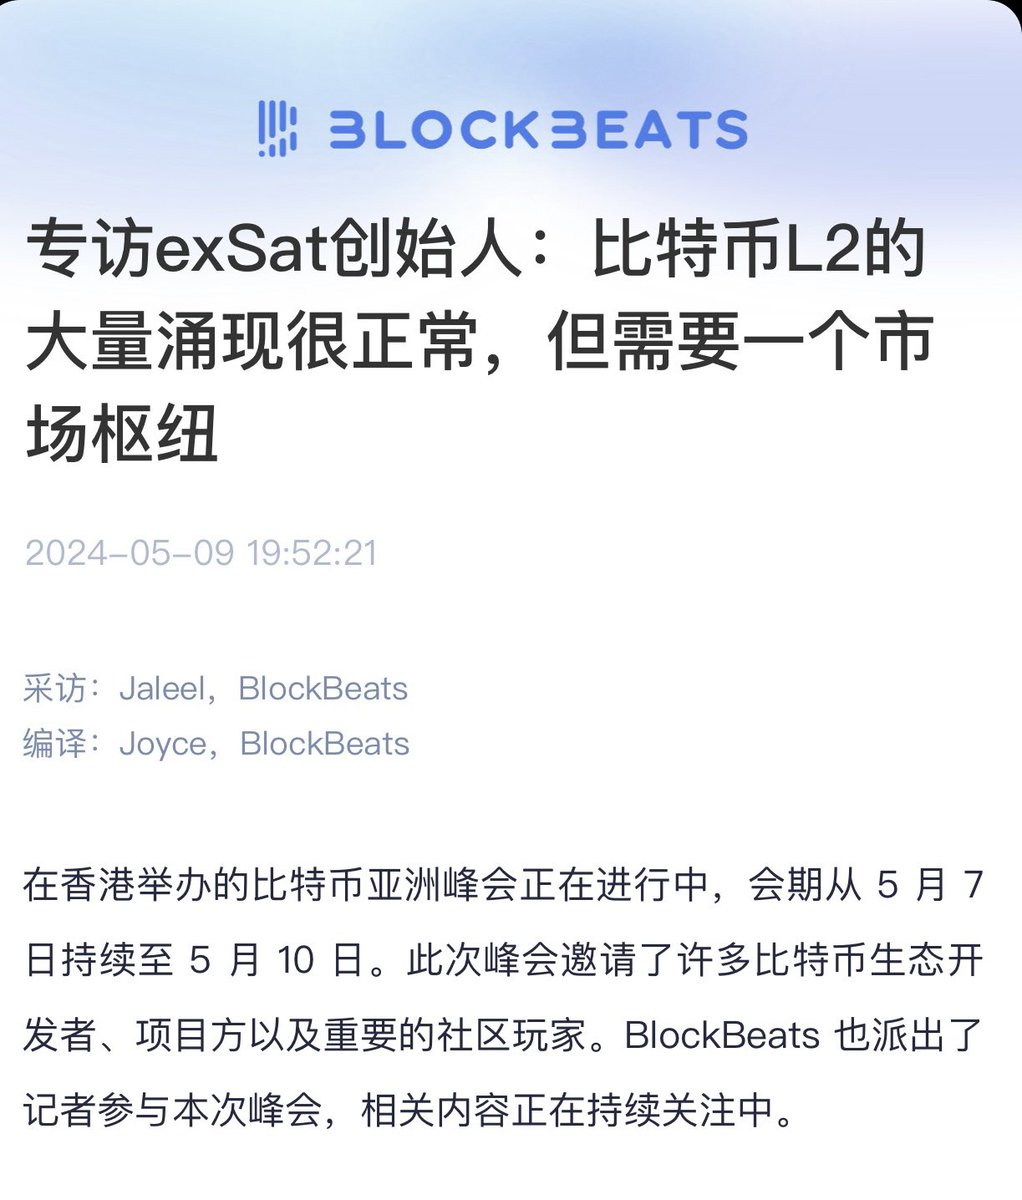 香港比特币亚洲峰会焦点之一为 @exSatNetwork 🟧平台致力于通过整合 POW、POS 机制来优化比特币可扩展性。在 @BlockBeatsAsia 采访中，exSat 创始人  @BigBeardSamurai 表示，他视 exSat 为真正的比特币扩展解决方案，而非传统意义上的第二层网络。期待 exSat 为比特币生态带来革新！🟧